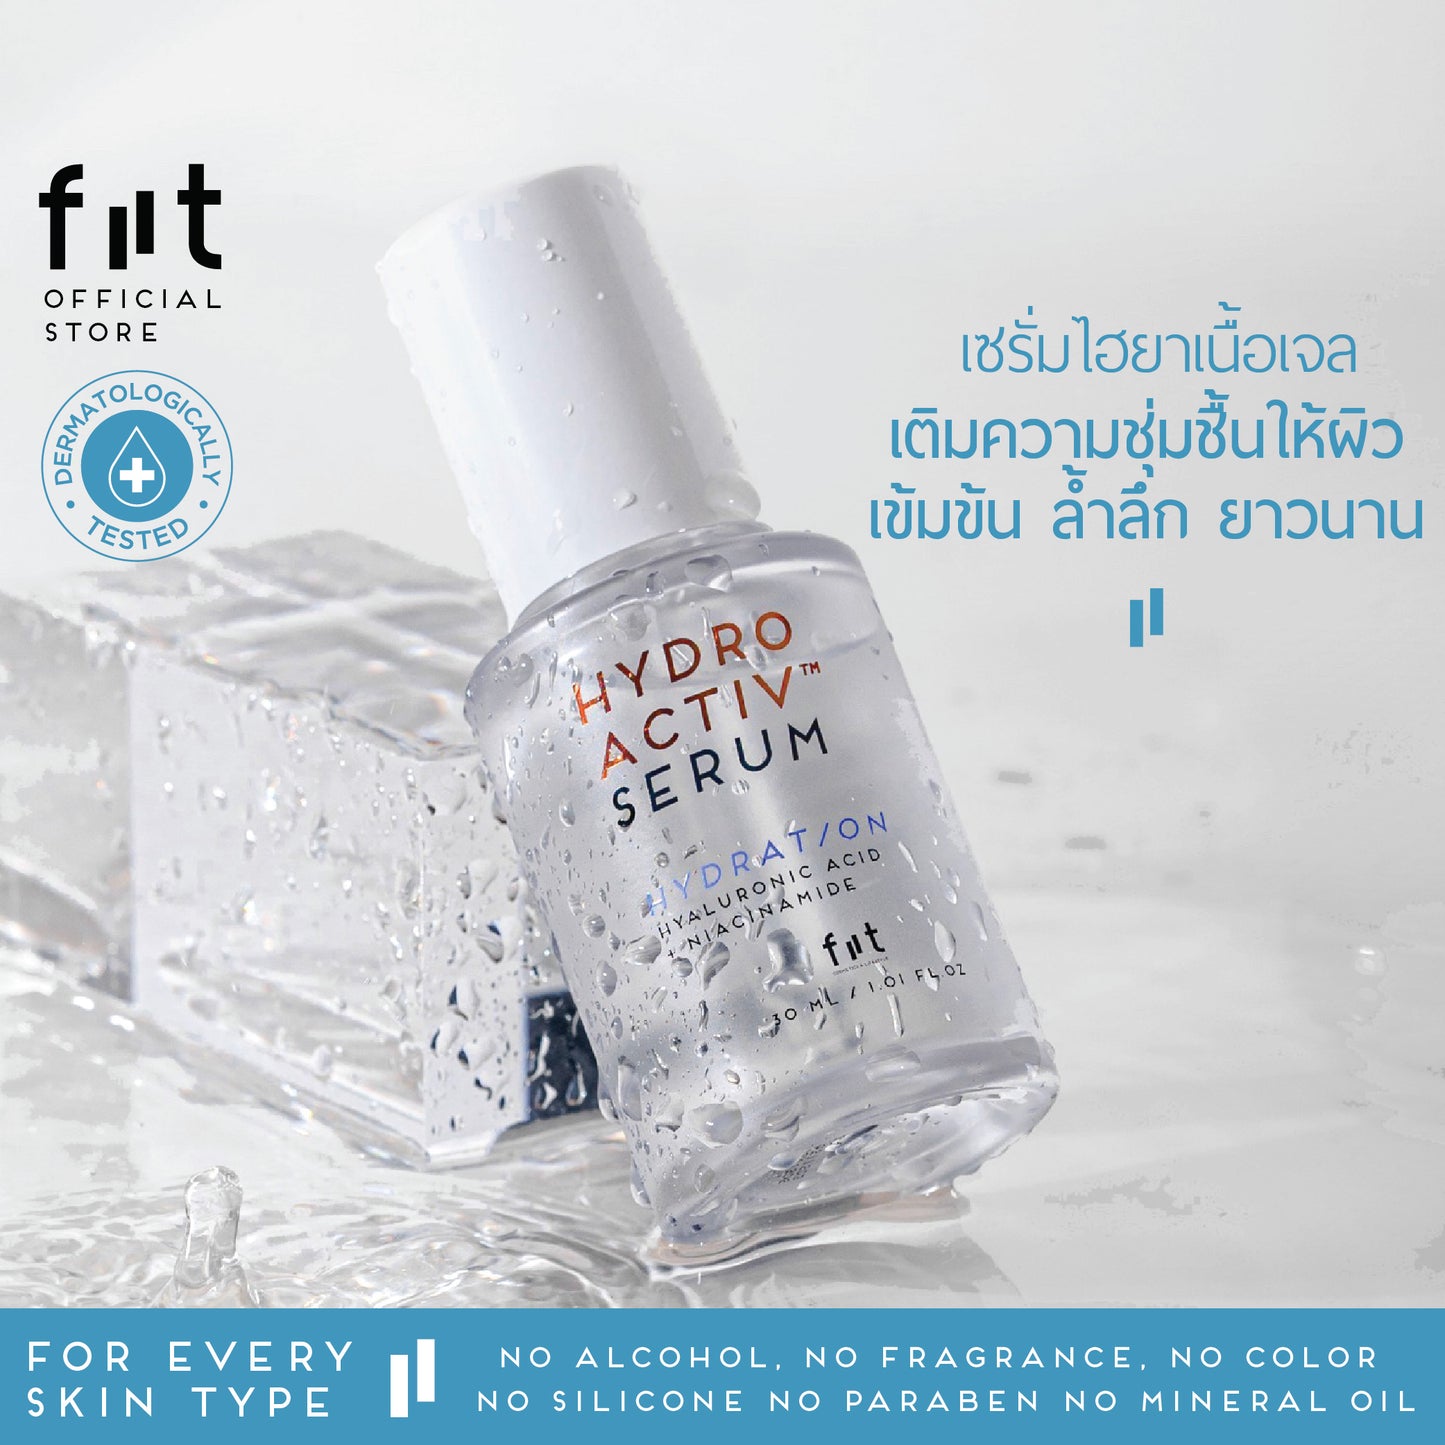 [ผิวแห้ง/ผิวขาดน้ำ]  FIIT Hydro Activ Serum + Cream